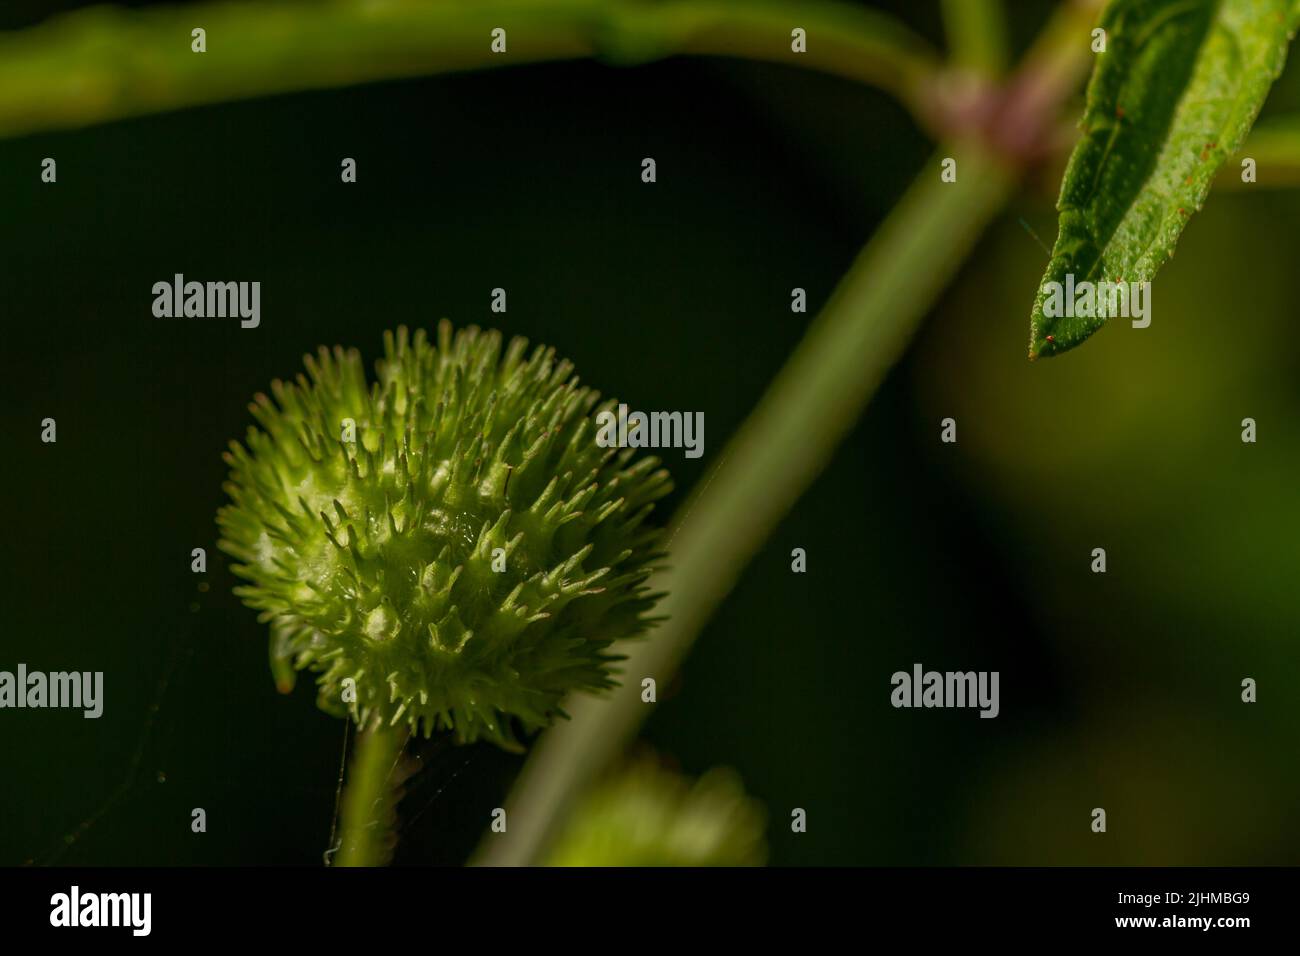 Knobweed-Pflanze blüht in Form einer Kugel mit einer rauen und spitzen Oberfläche, grün, wenn jung und braun, wenn alt, isoliert auf einem verschwommenen Rücken Stockfoto